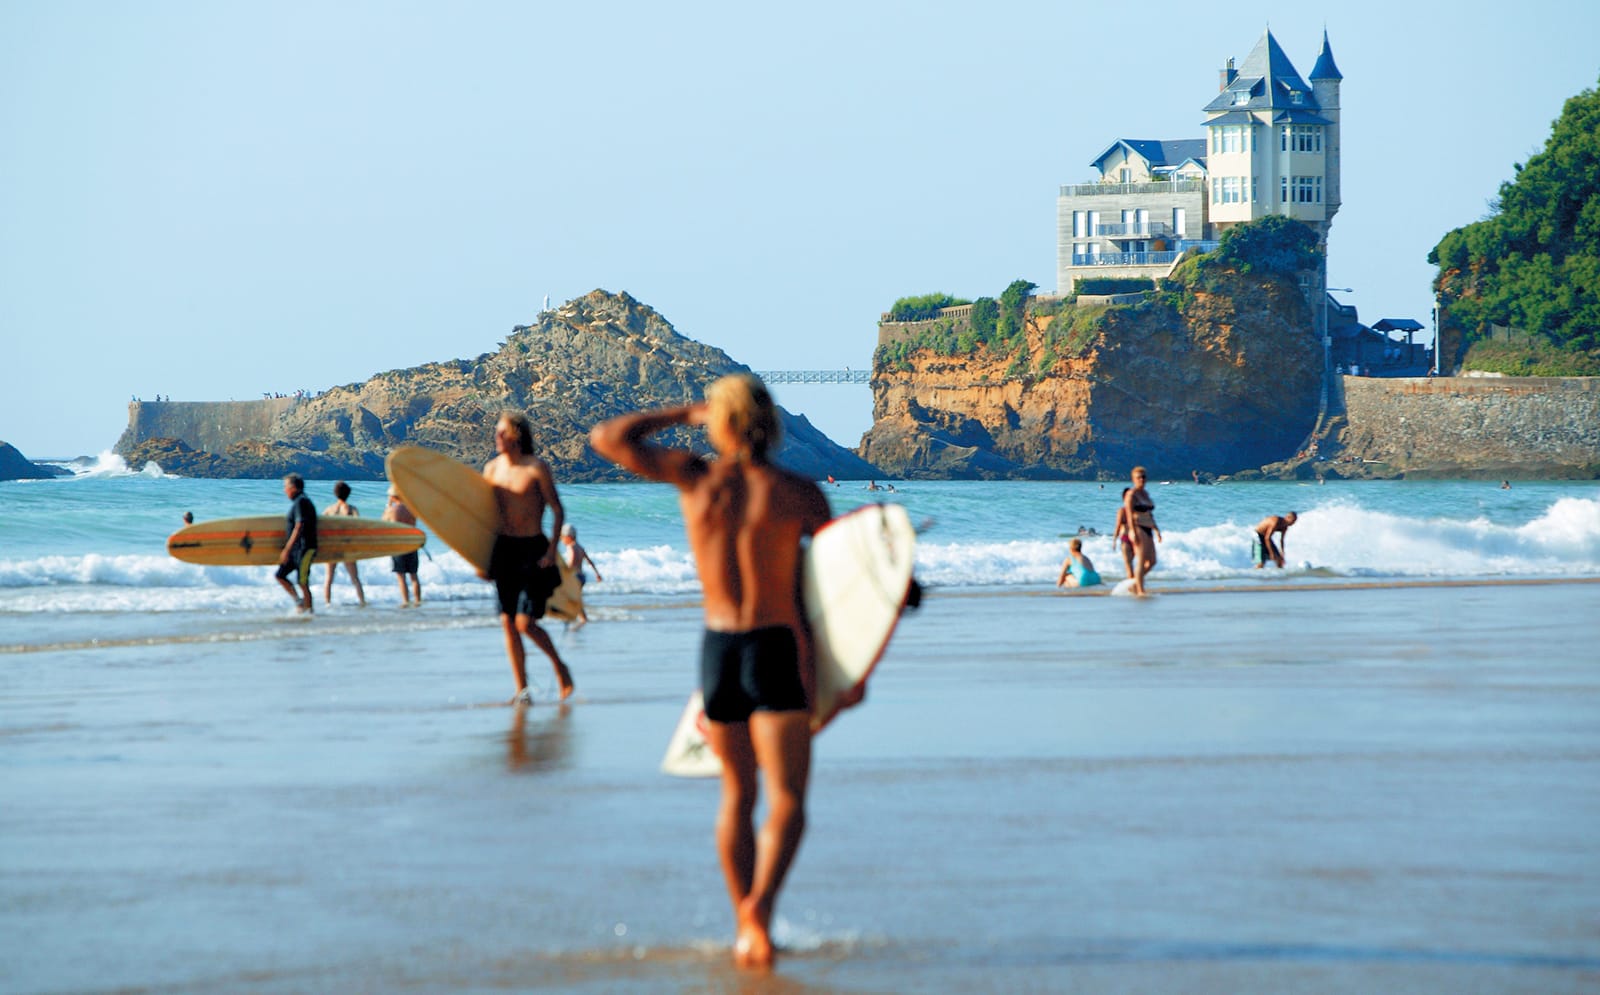 Surfing in Biarritz, an institution